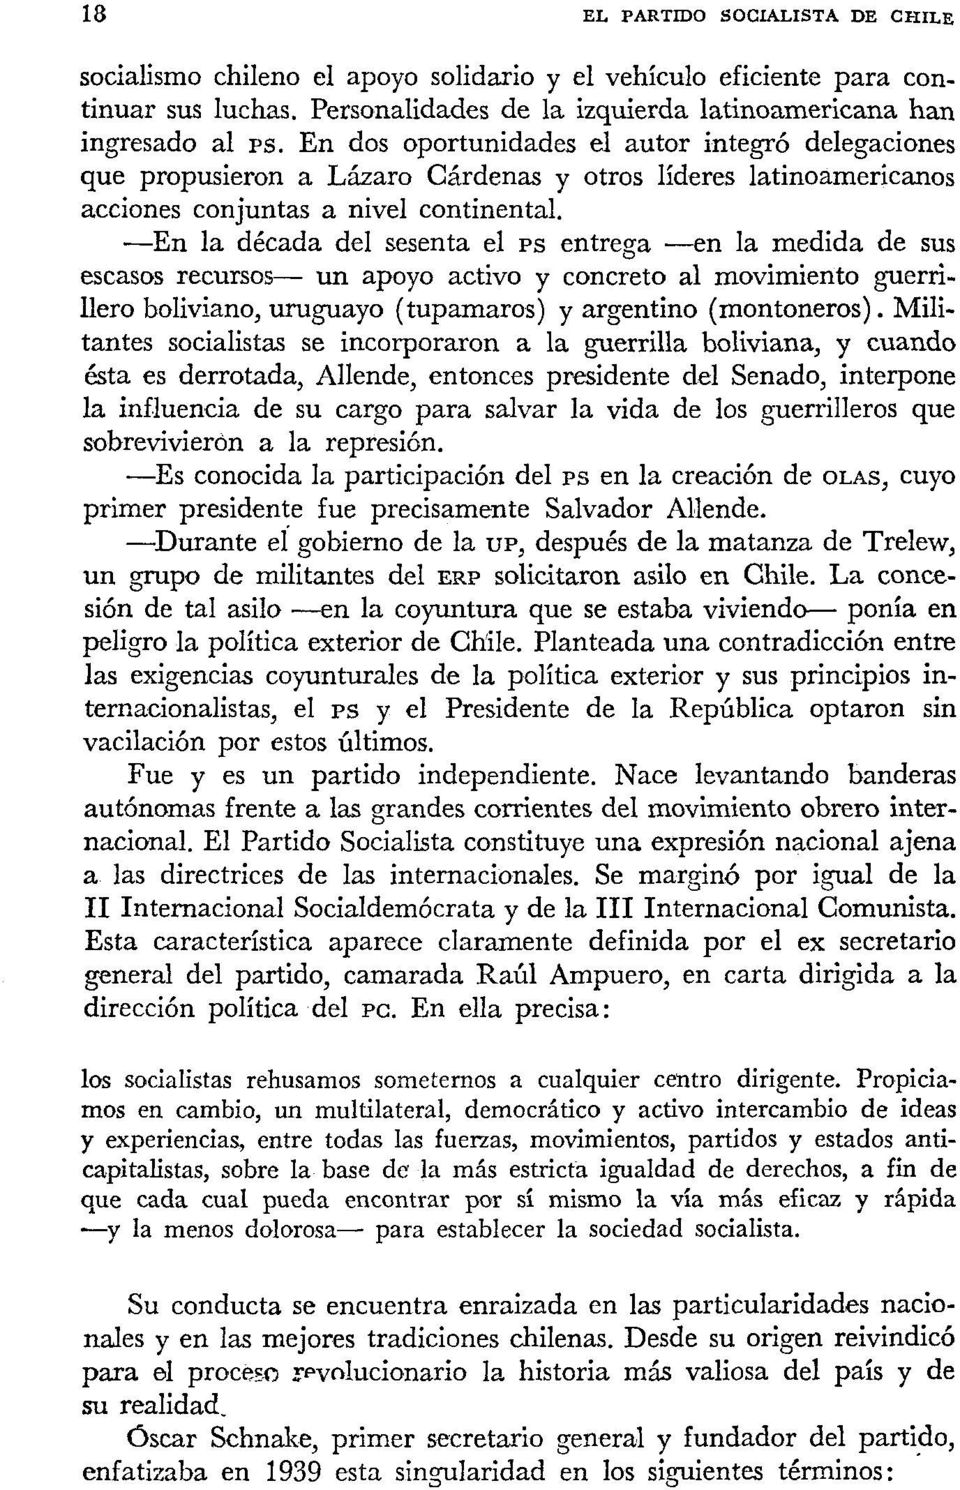 -En la década del sesenta el PS entrega -en la medida de sus escasos recursos- un apoyo activo y concreto al movimiento guerrillero boliviano, uruguayo (tuparnaros) y argentino (montoneros).